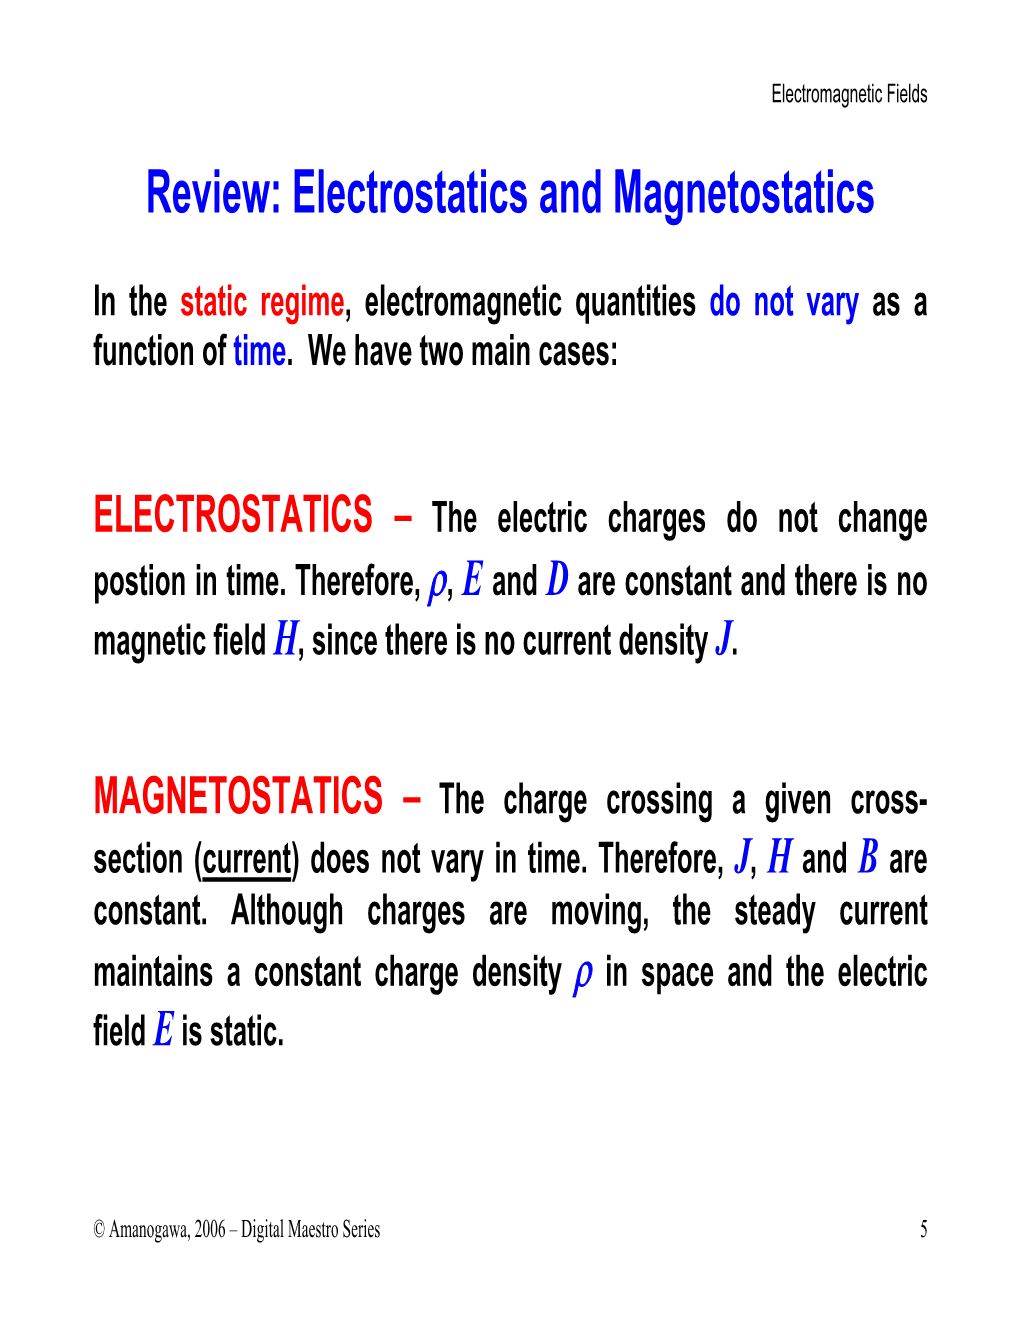 Review: Electrostatics and Magnetostatics